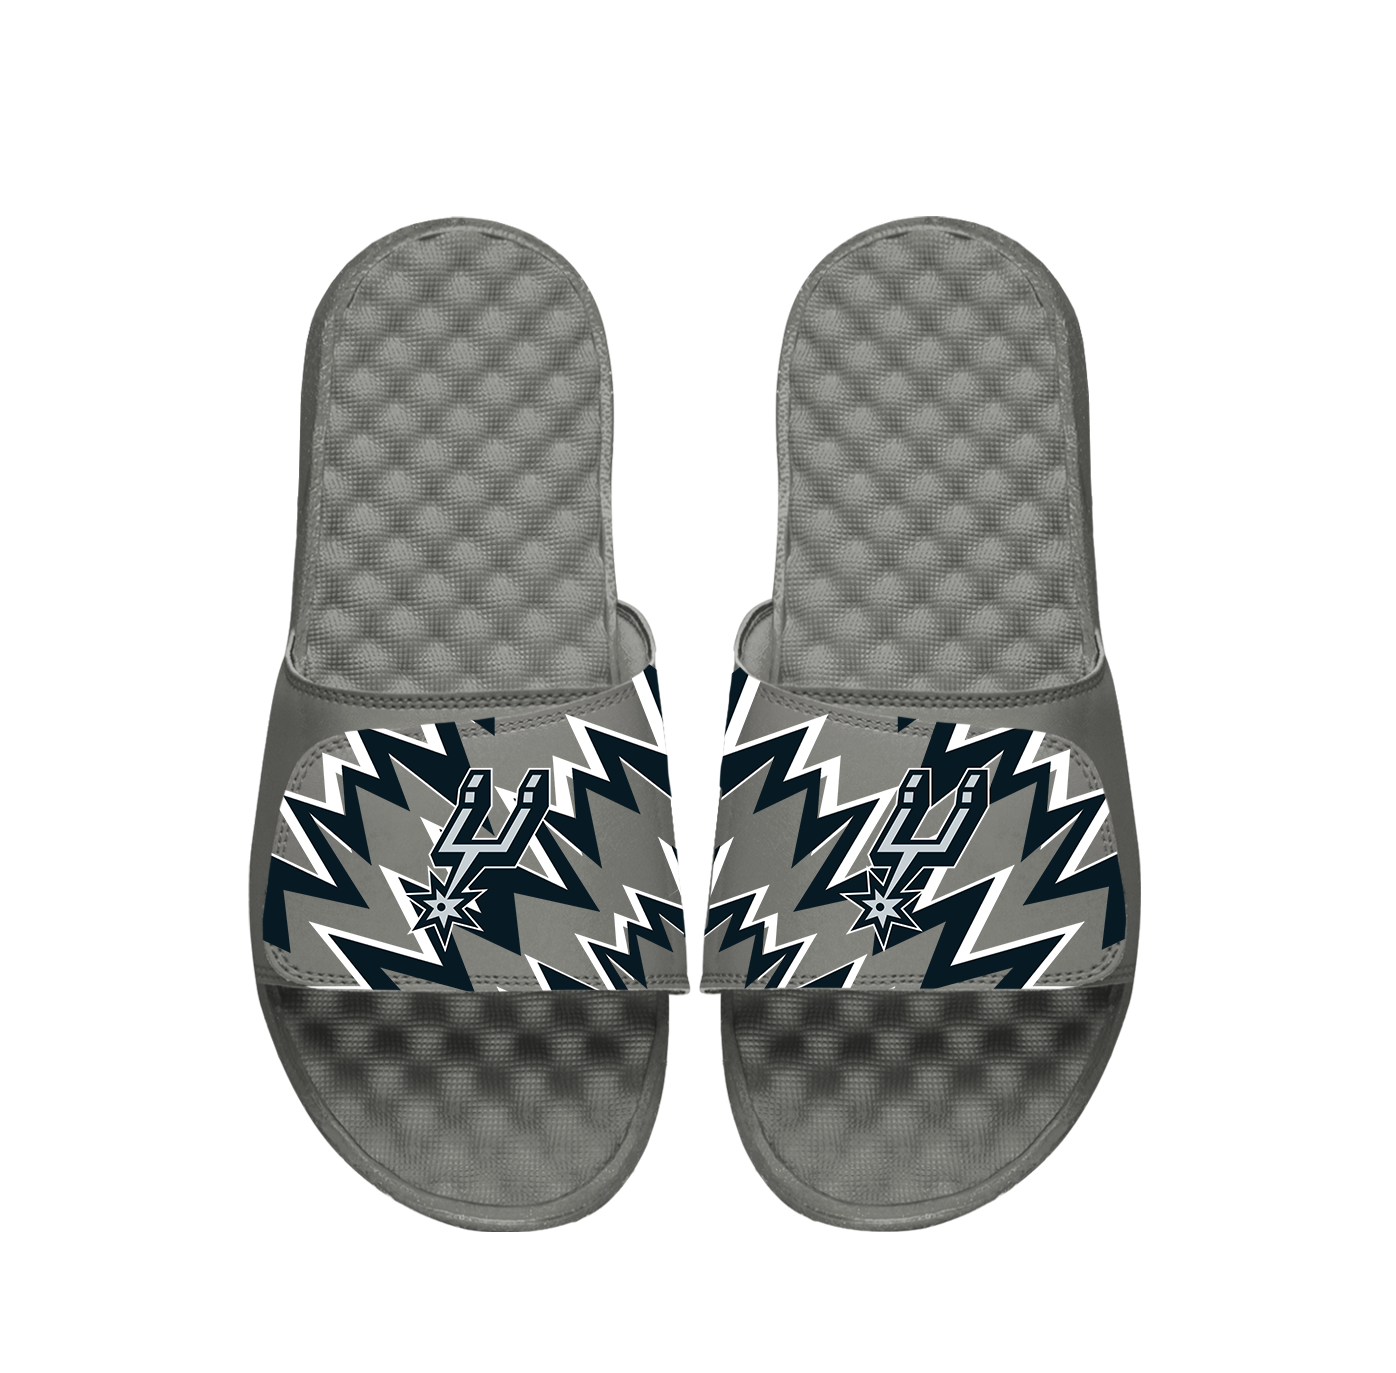 Spurs High Energy Slide Sandals Slides